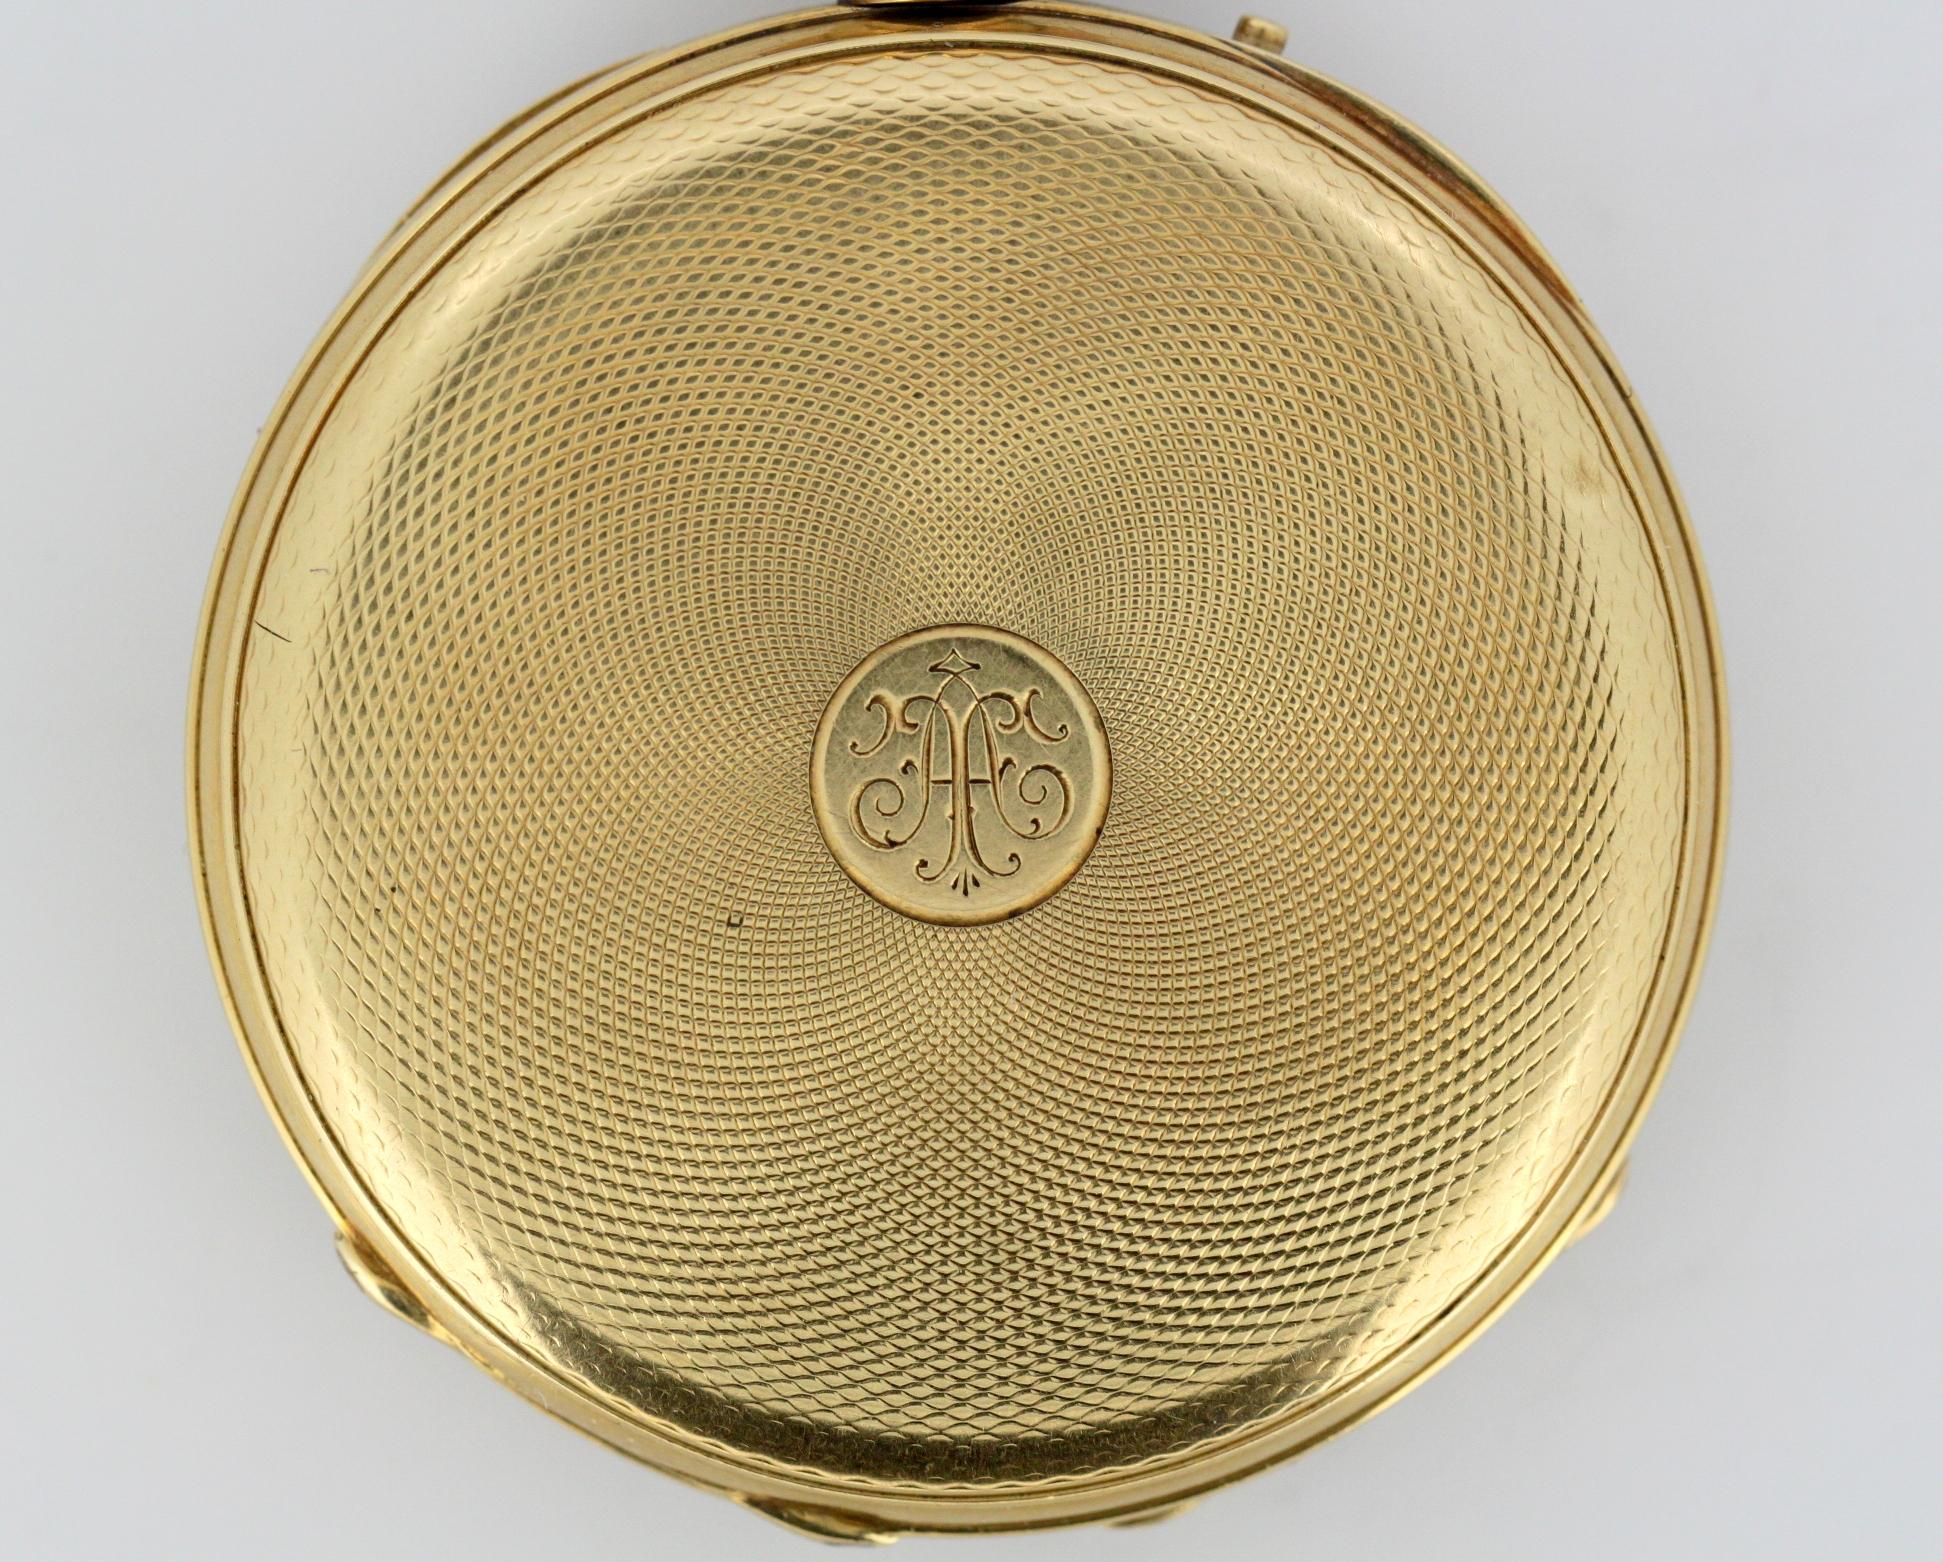 Antique Swiss 18 Karat Yellow Gold Pocket Watch by Amore Spiral Breguet, 1920s 1